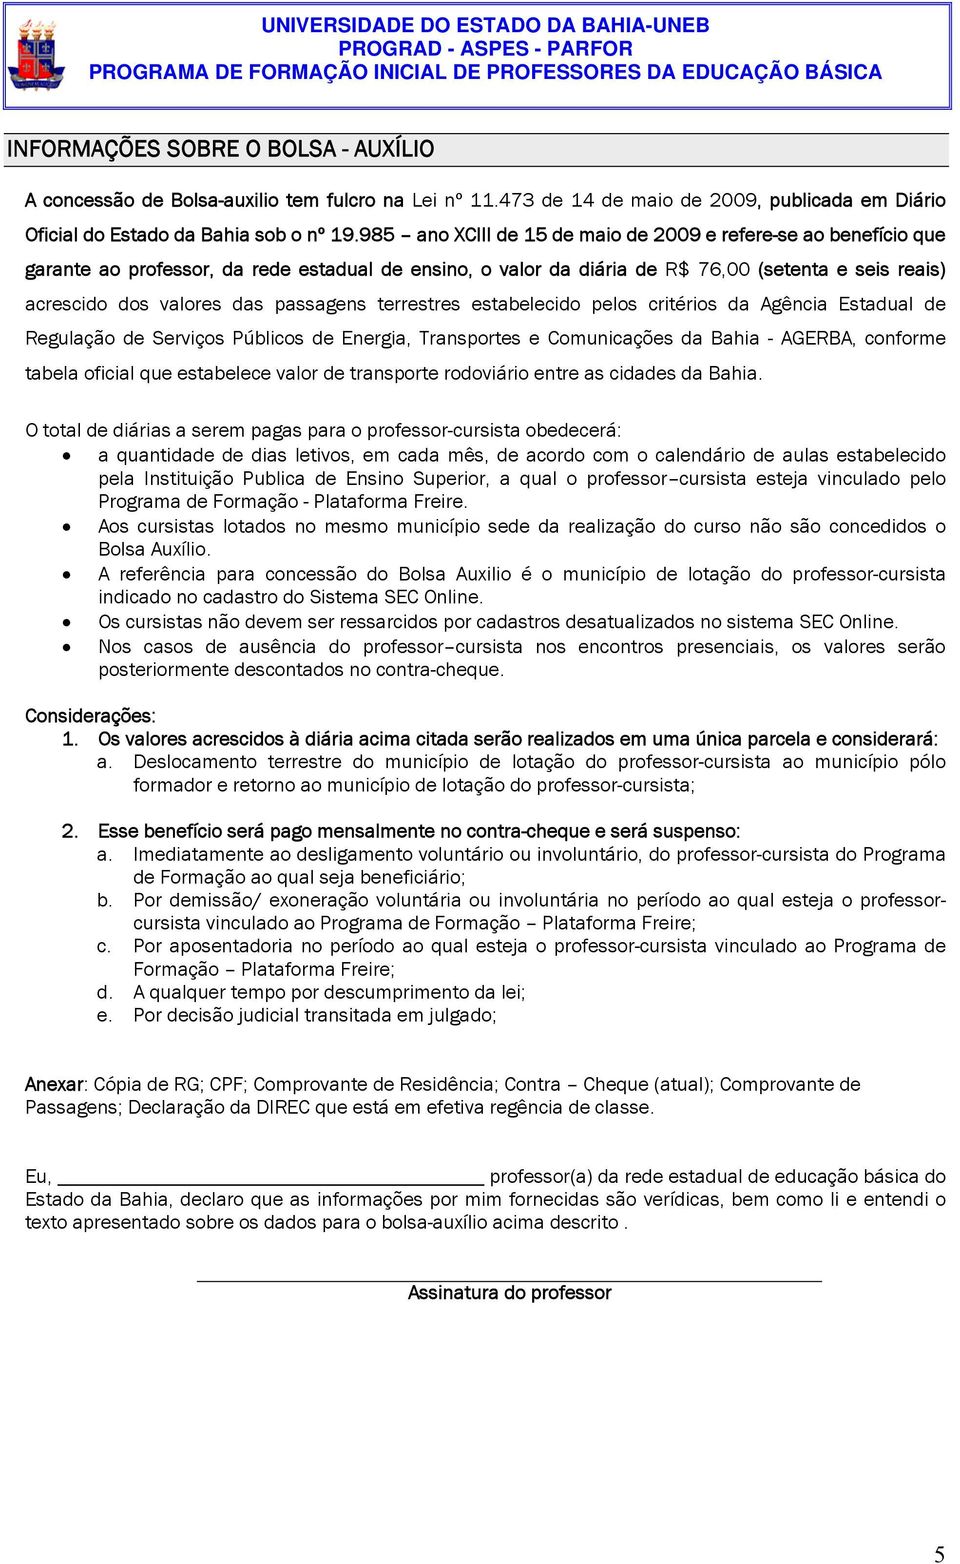 passagens terrestres estabelecido pelos critérios da Agência Estadual de Regulação de Serviços Públicos de Energia, Transportes e Comunicações da Bahia - AGERBA, conforme tabela oficial que